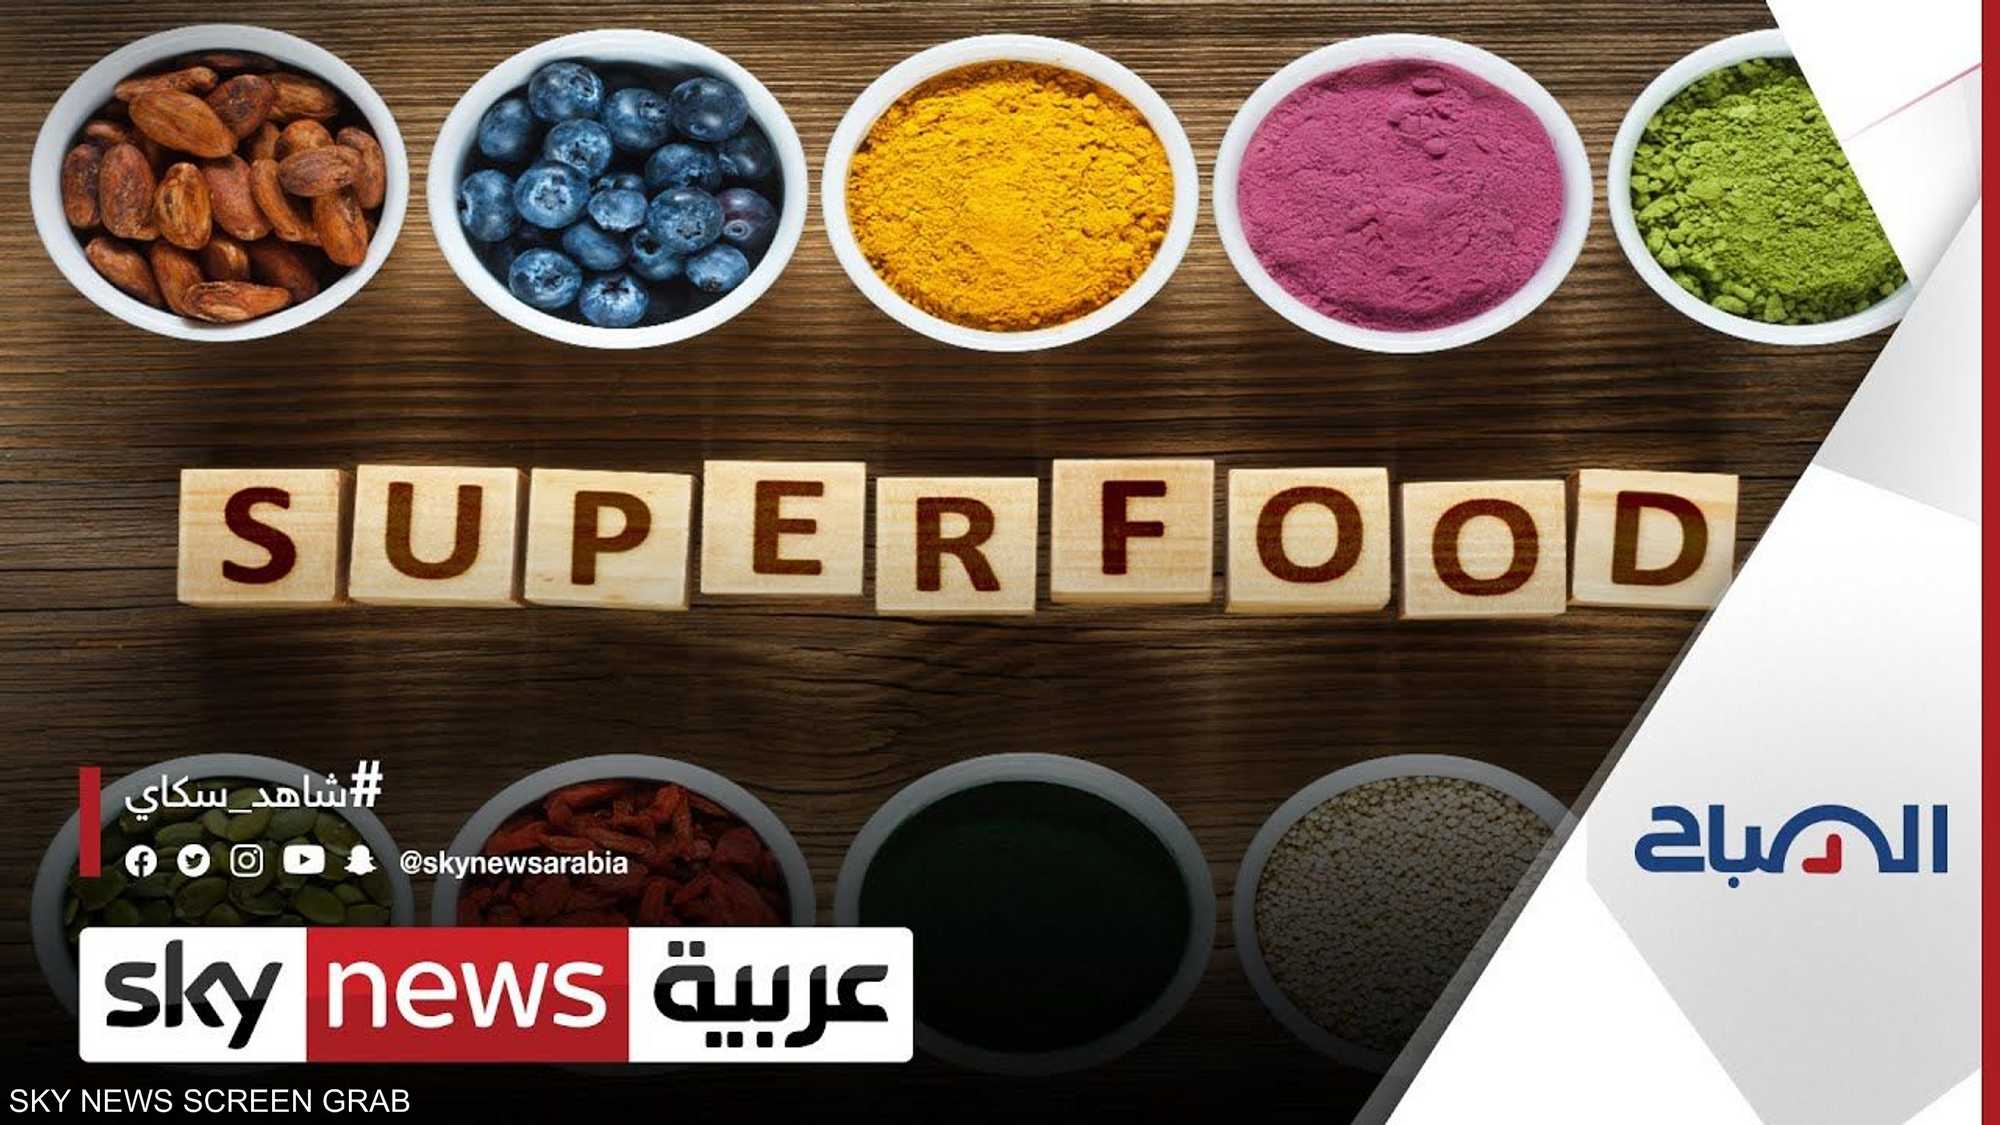 ما هي الأغذية التي تُدعى بـ"الأطعمة الخارقة" أو Superfoods؟